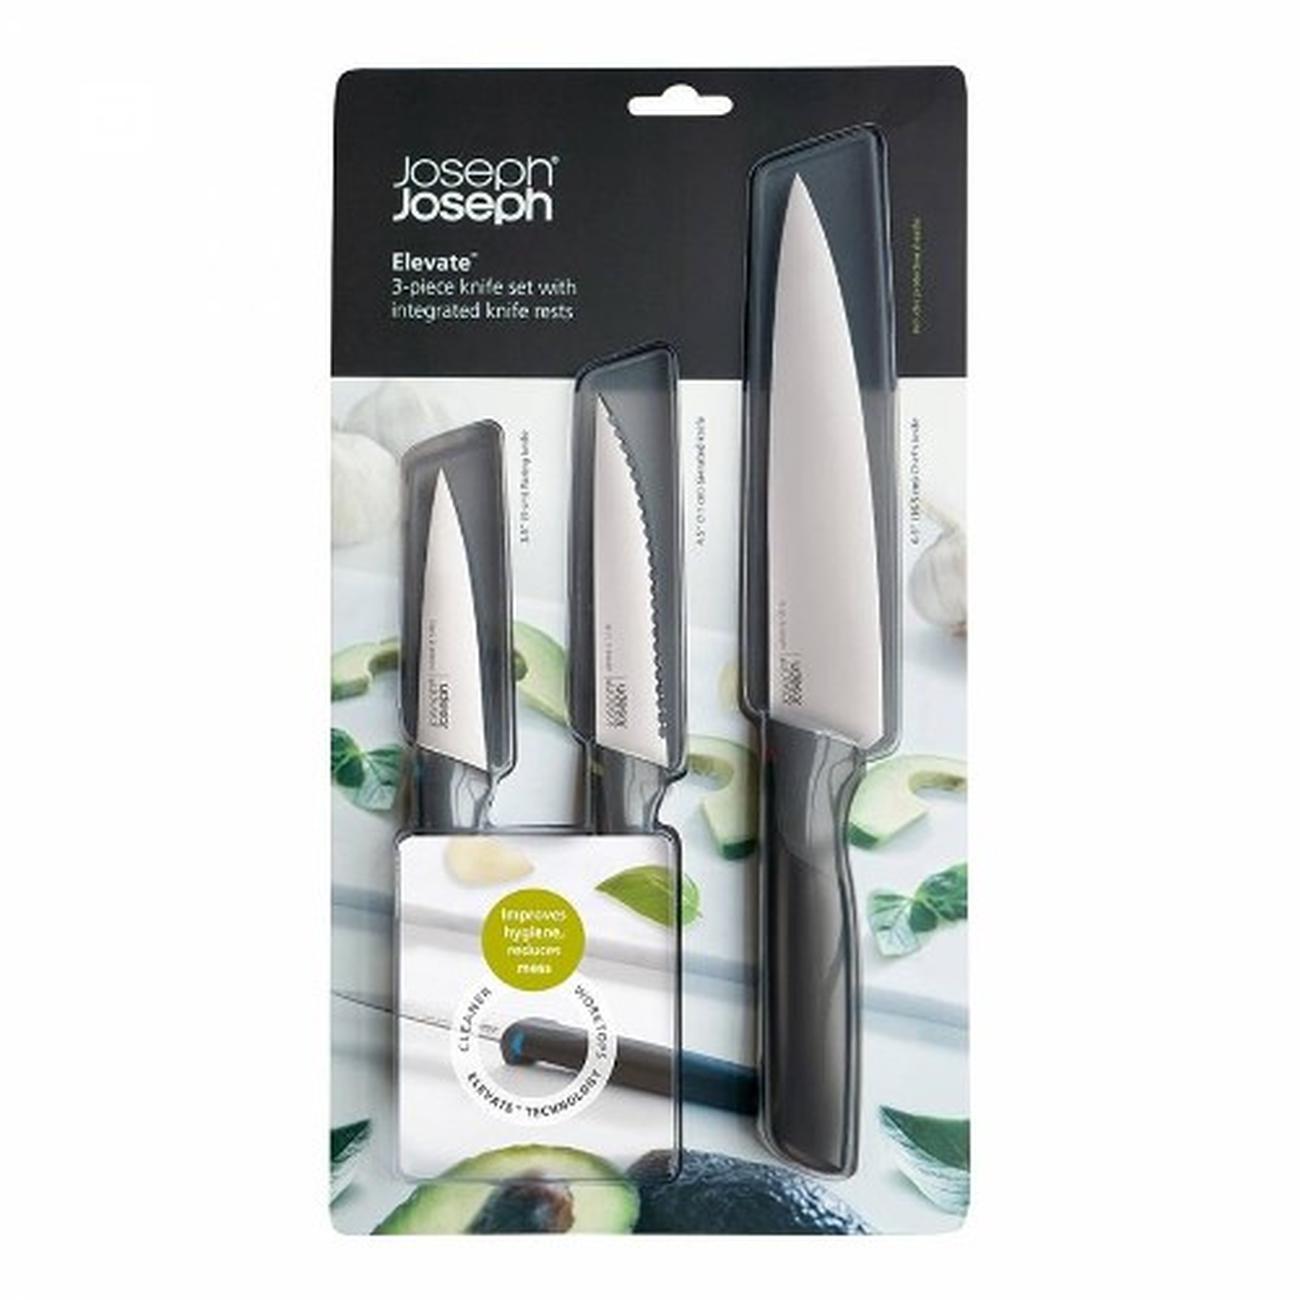 joseph-joseph-elevate-3pc-knife-set - Joseph Joseph Elevate 3pc Knife Set